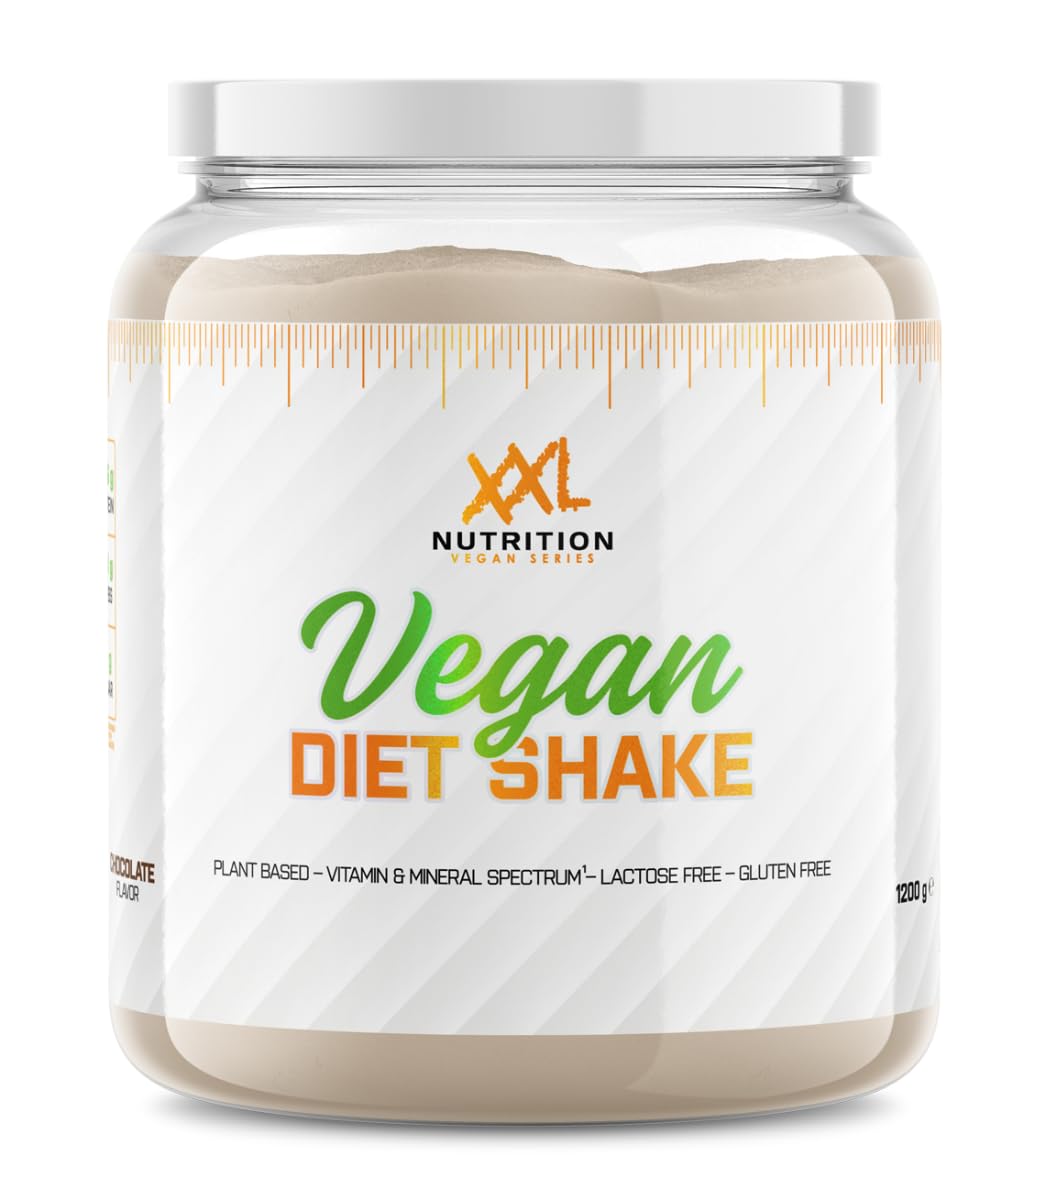 XXL Nutrition - Vegan Diet Shake - Veganer und Laktosefreier Mahlzeitenersatz, 24,6 Gramm Eiweiss pro Portion, Vitaminen und Mineralstoffen, Plant Based - Schokolade - 1200 Gramm